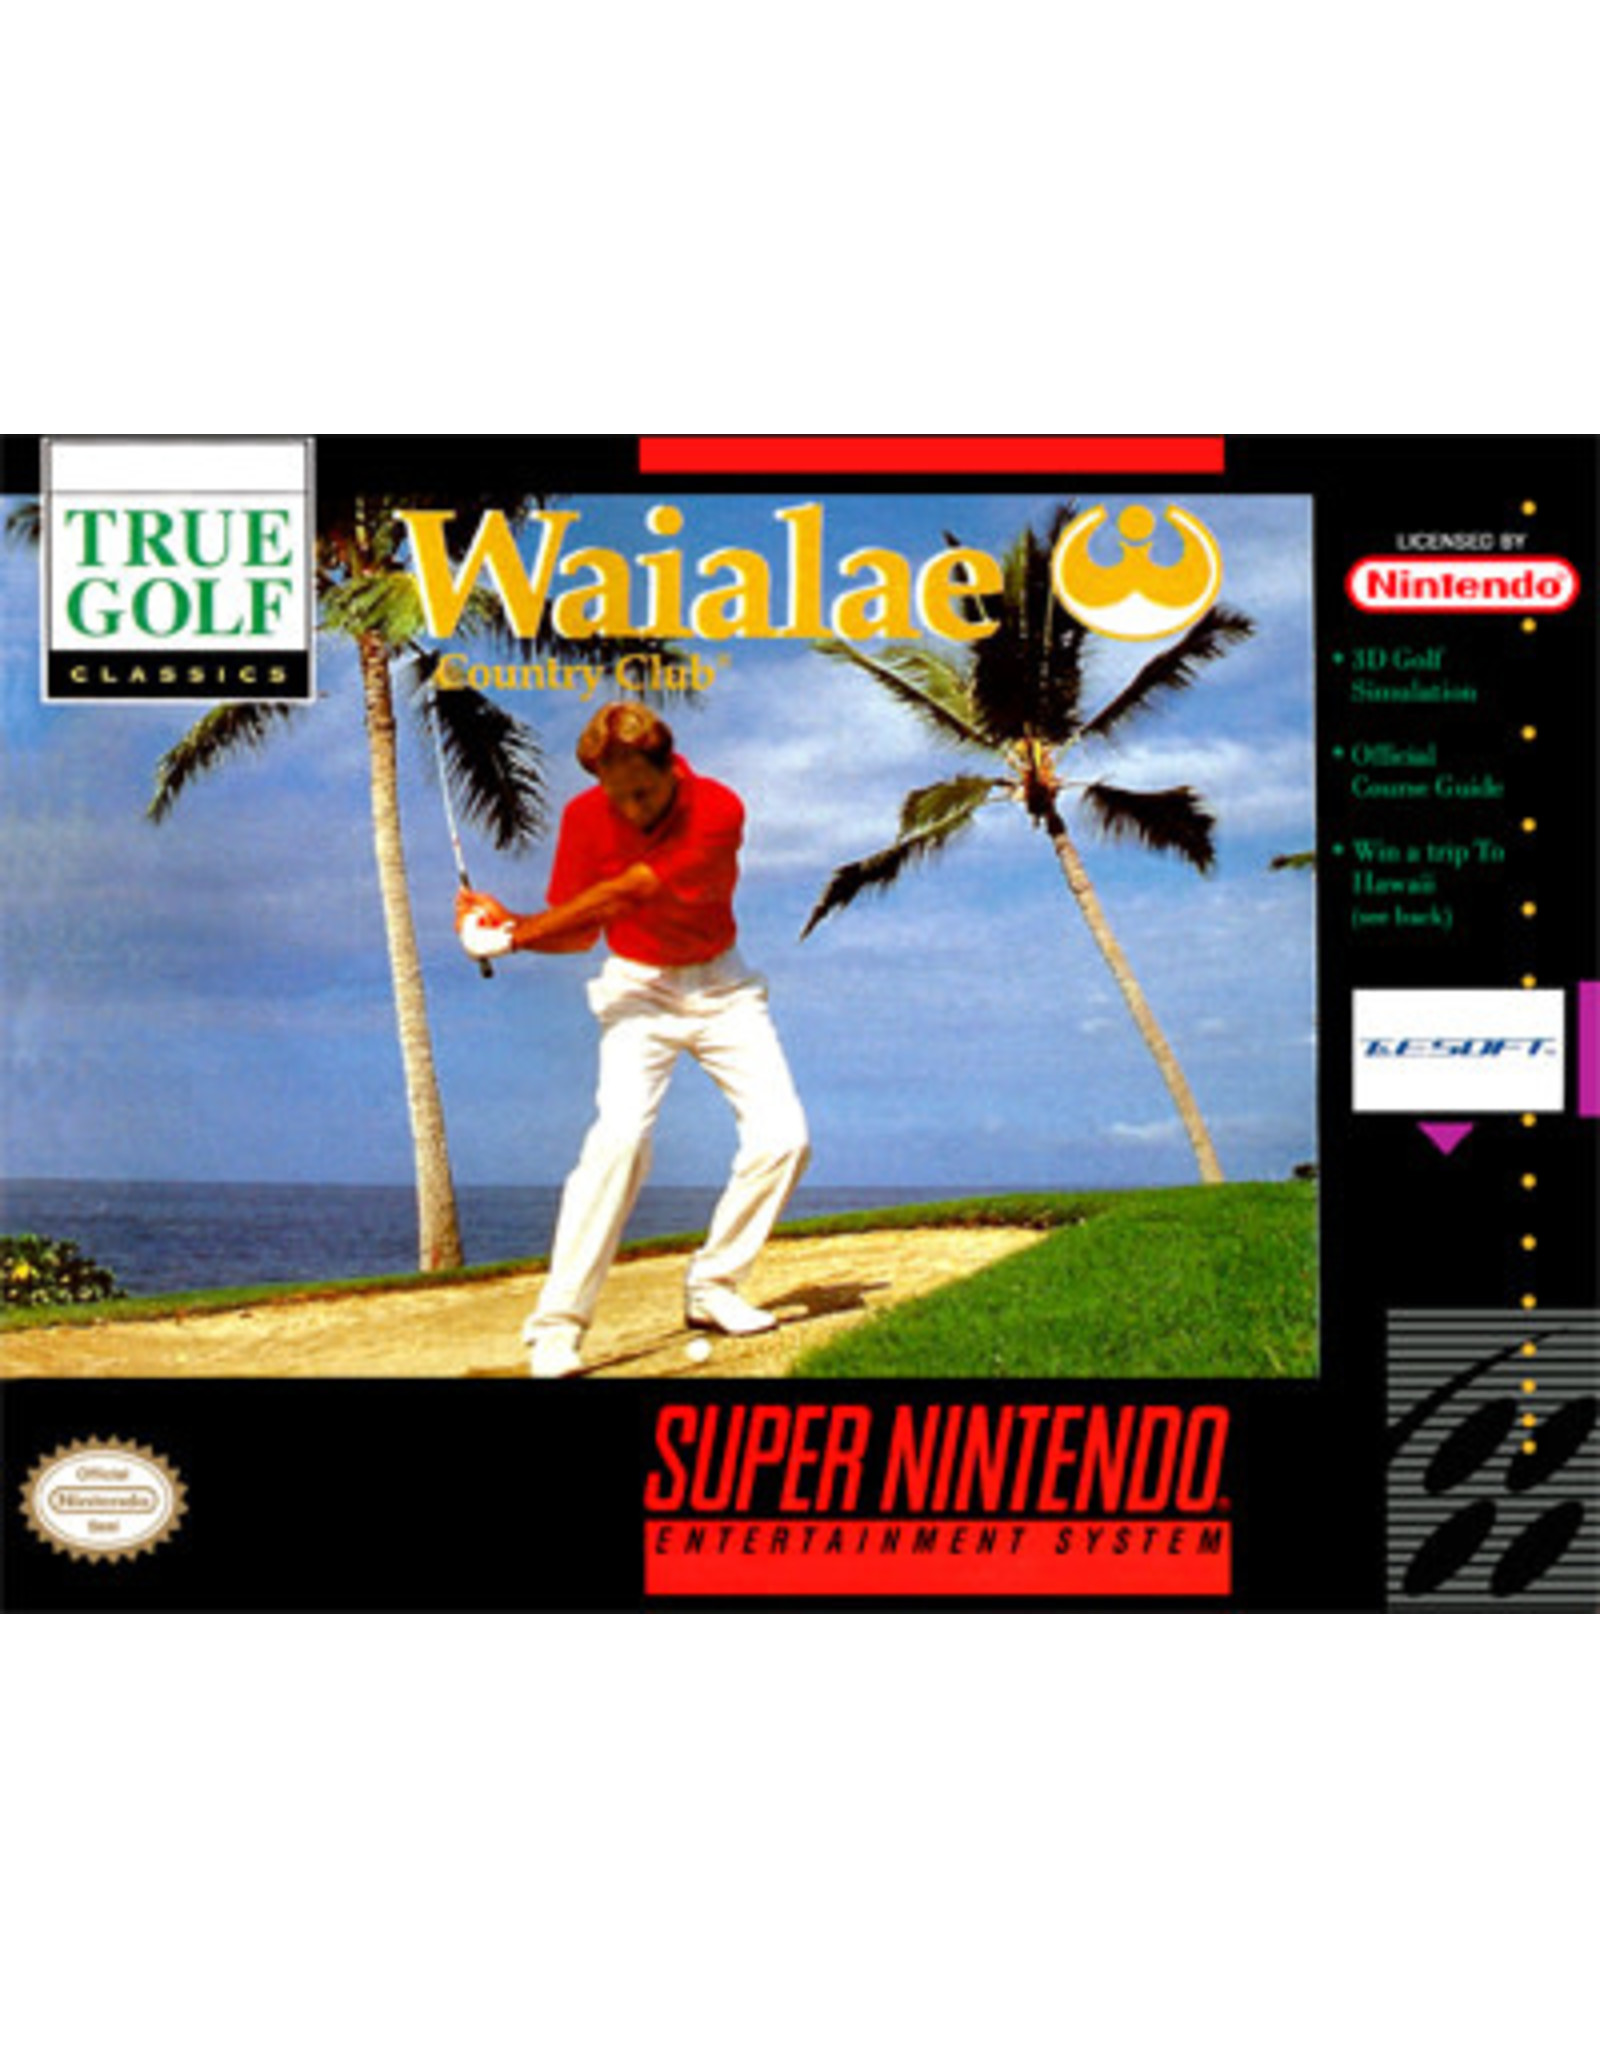 Super Nintendo Waialae Country Club (CiB)